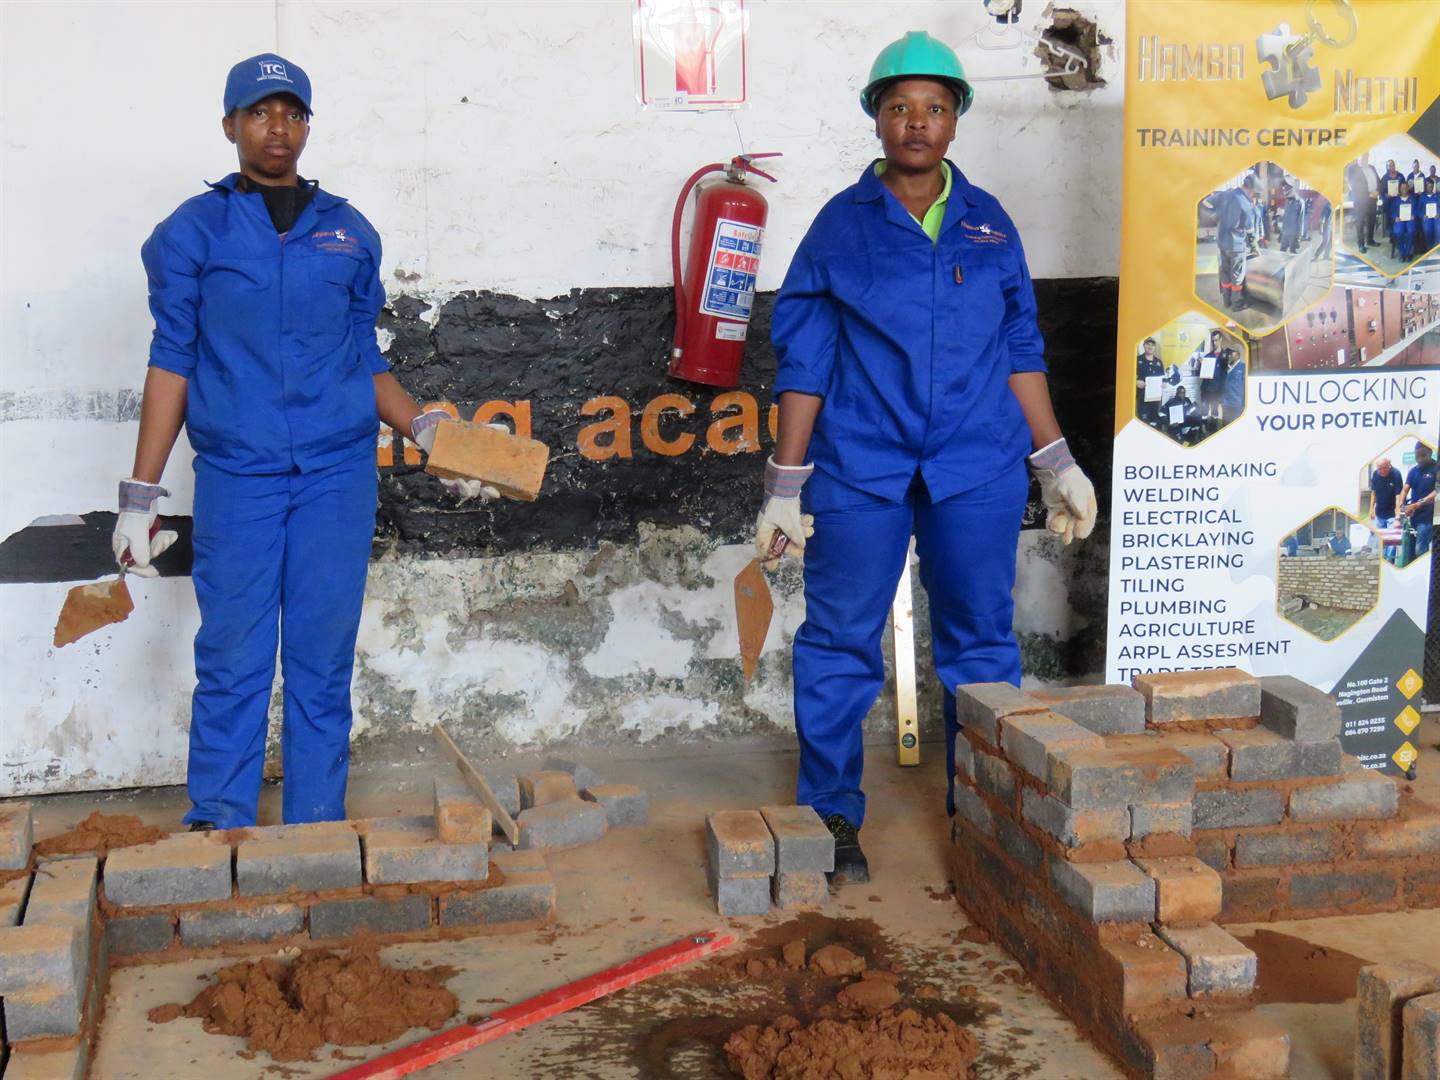 Nelisiwe Nkosi and Khethokuhle Hlongwane learn how to build at Hambanathi Training Centre. Photos by Ntebatse MasipaPhoto by 